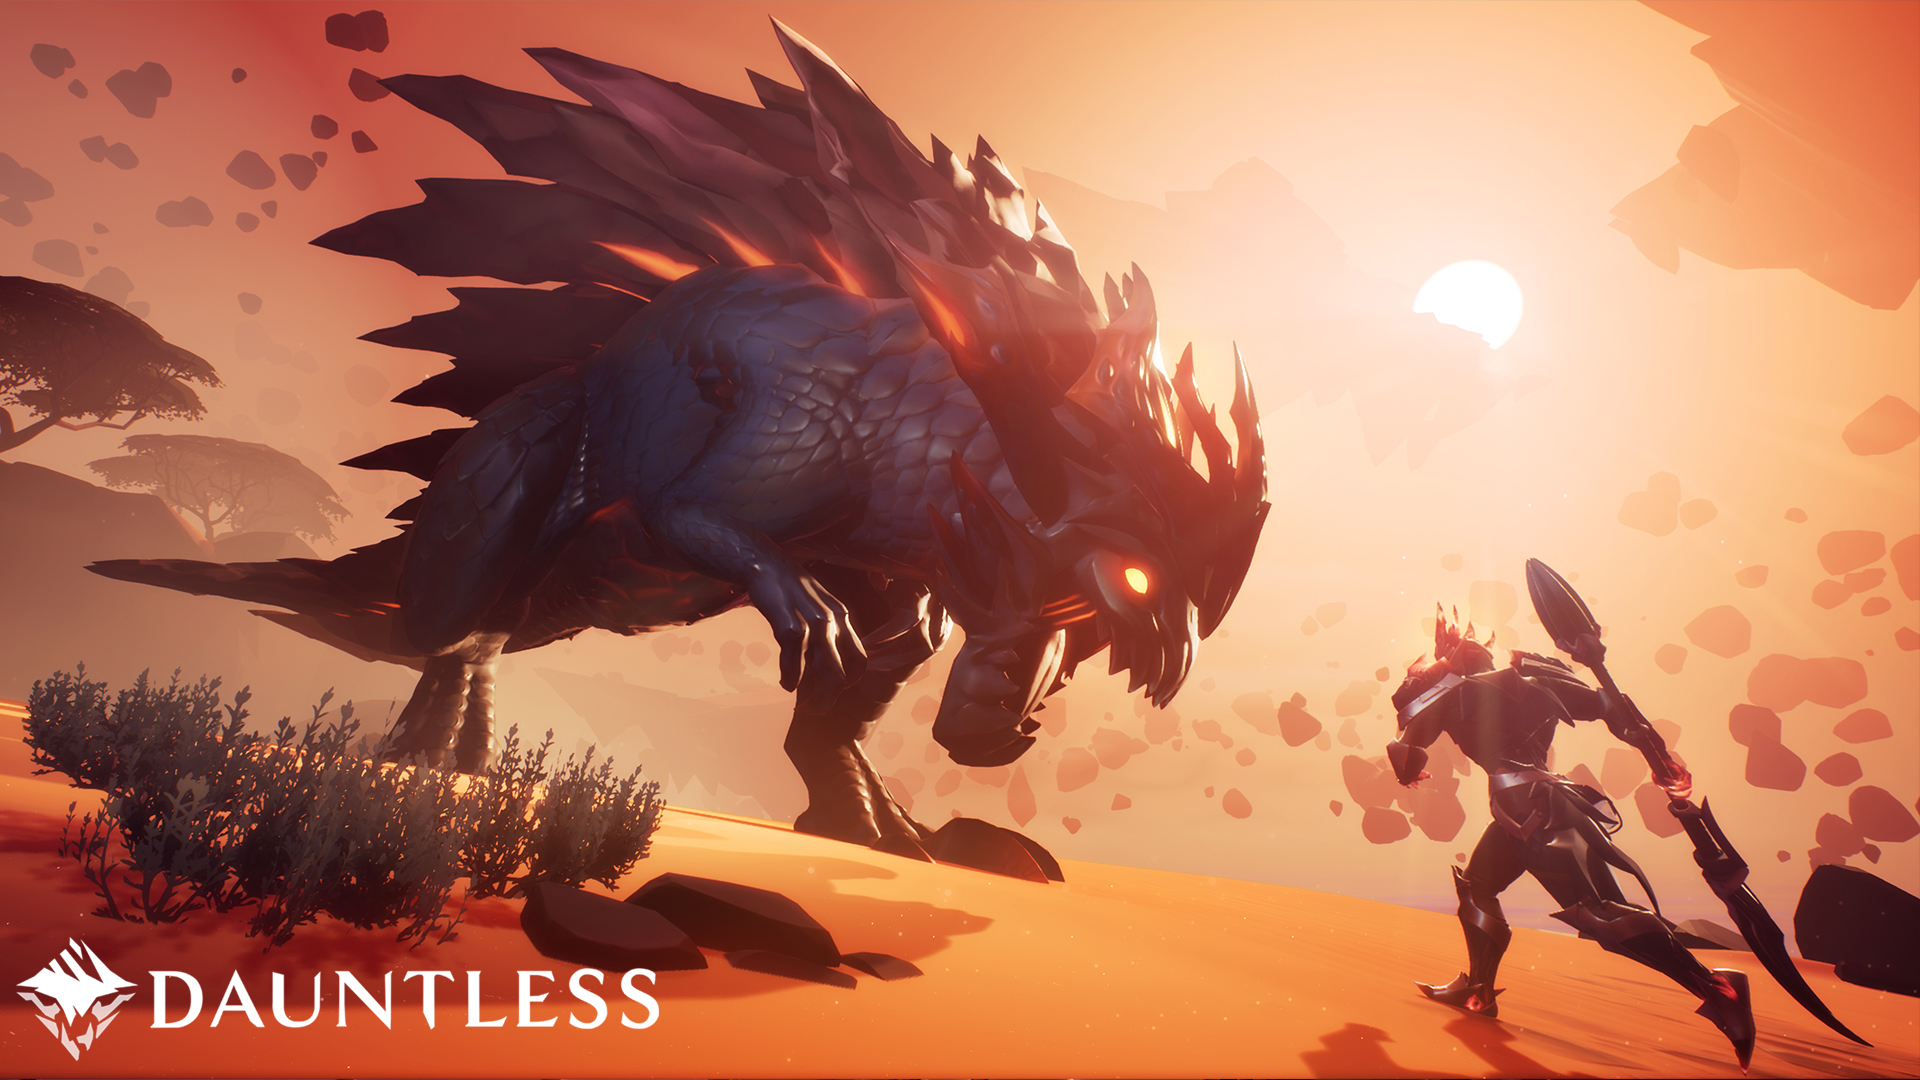 กระเเสตอบรับดี! Dauntless มีผู้เล่นเข้ามามากกว่า 1 ล้านไอดี หลังจากเปิด Open Beta ในเดือนพฤษภาคม